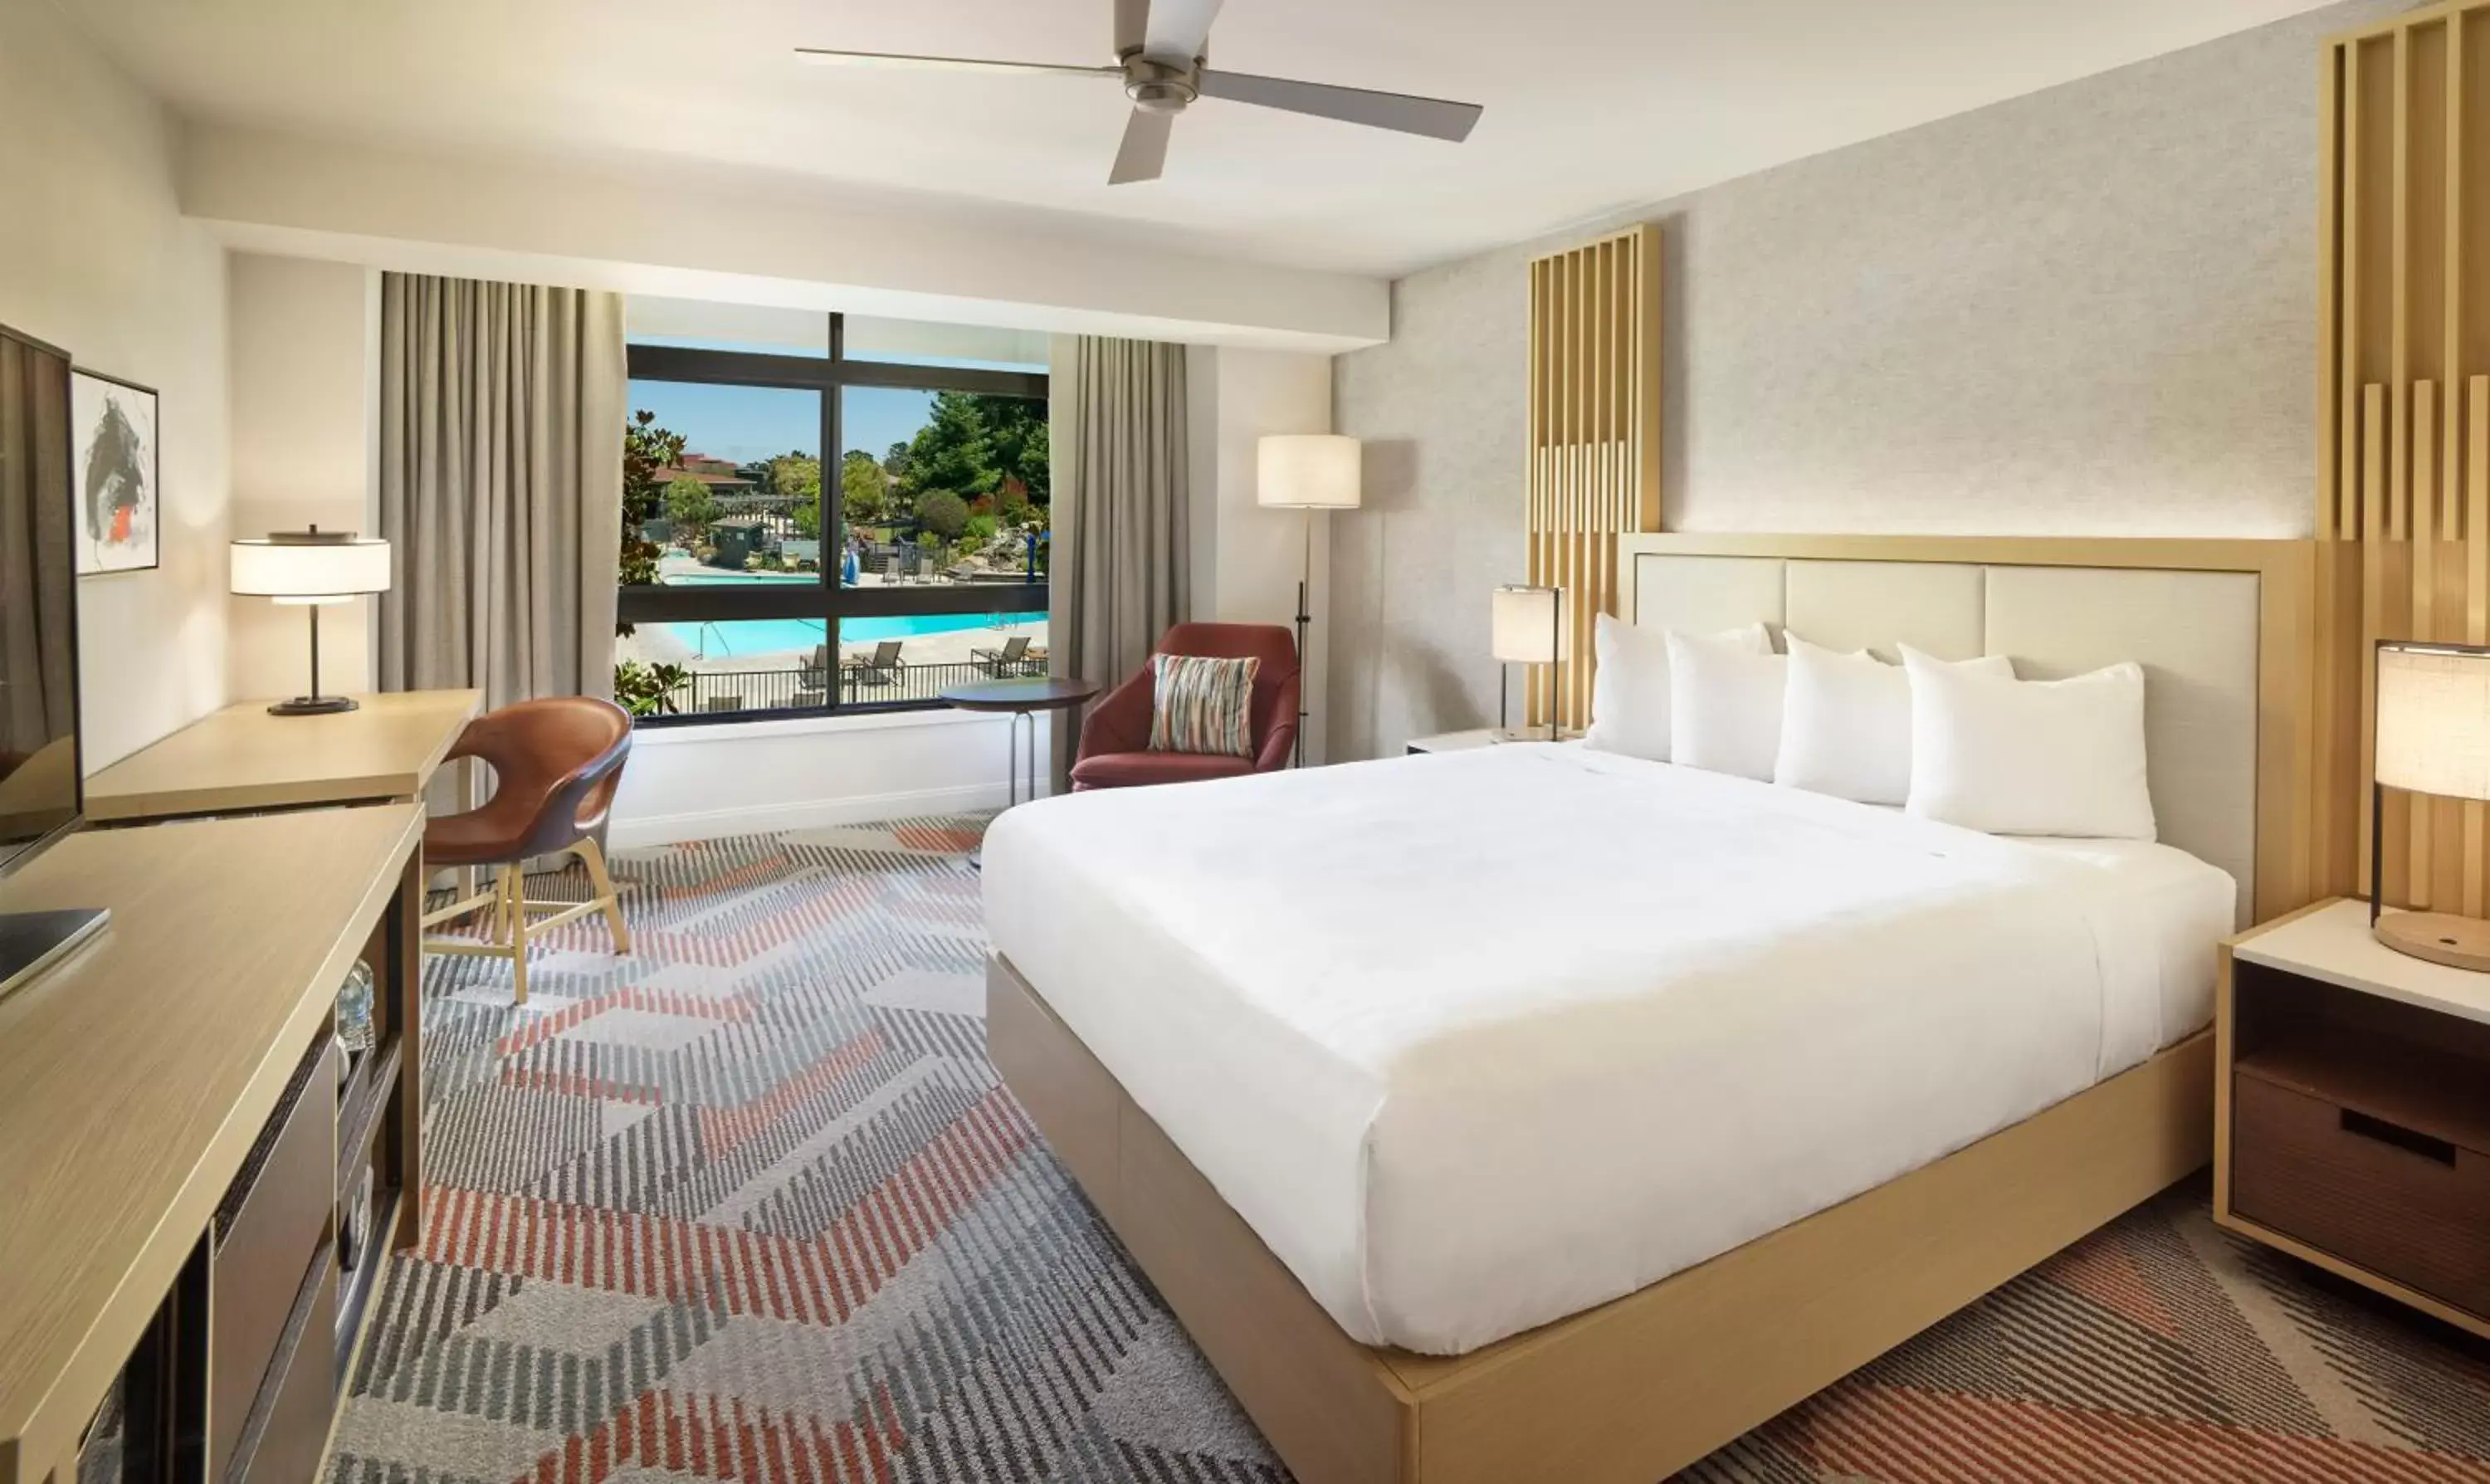 King Room with Pool View in Hyatt Regency Monterey Hotel and Spa